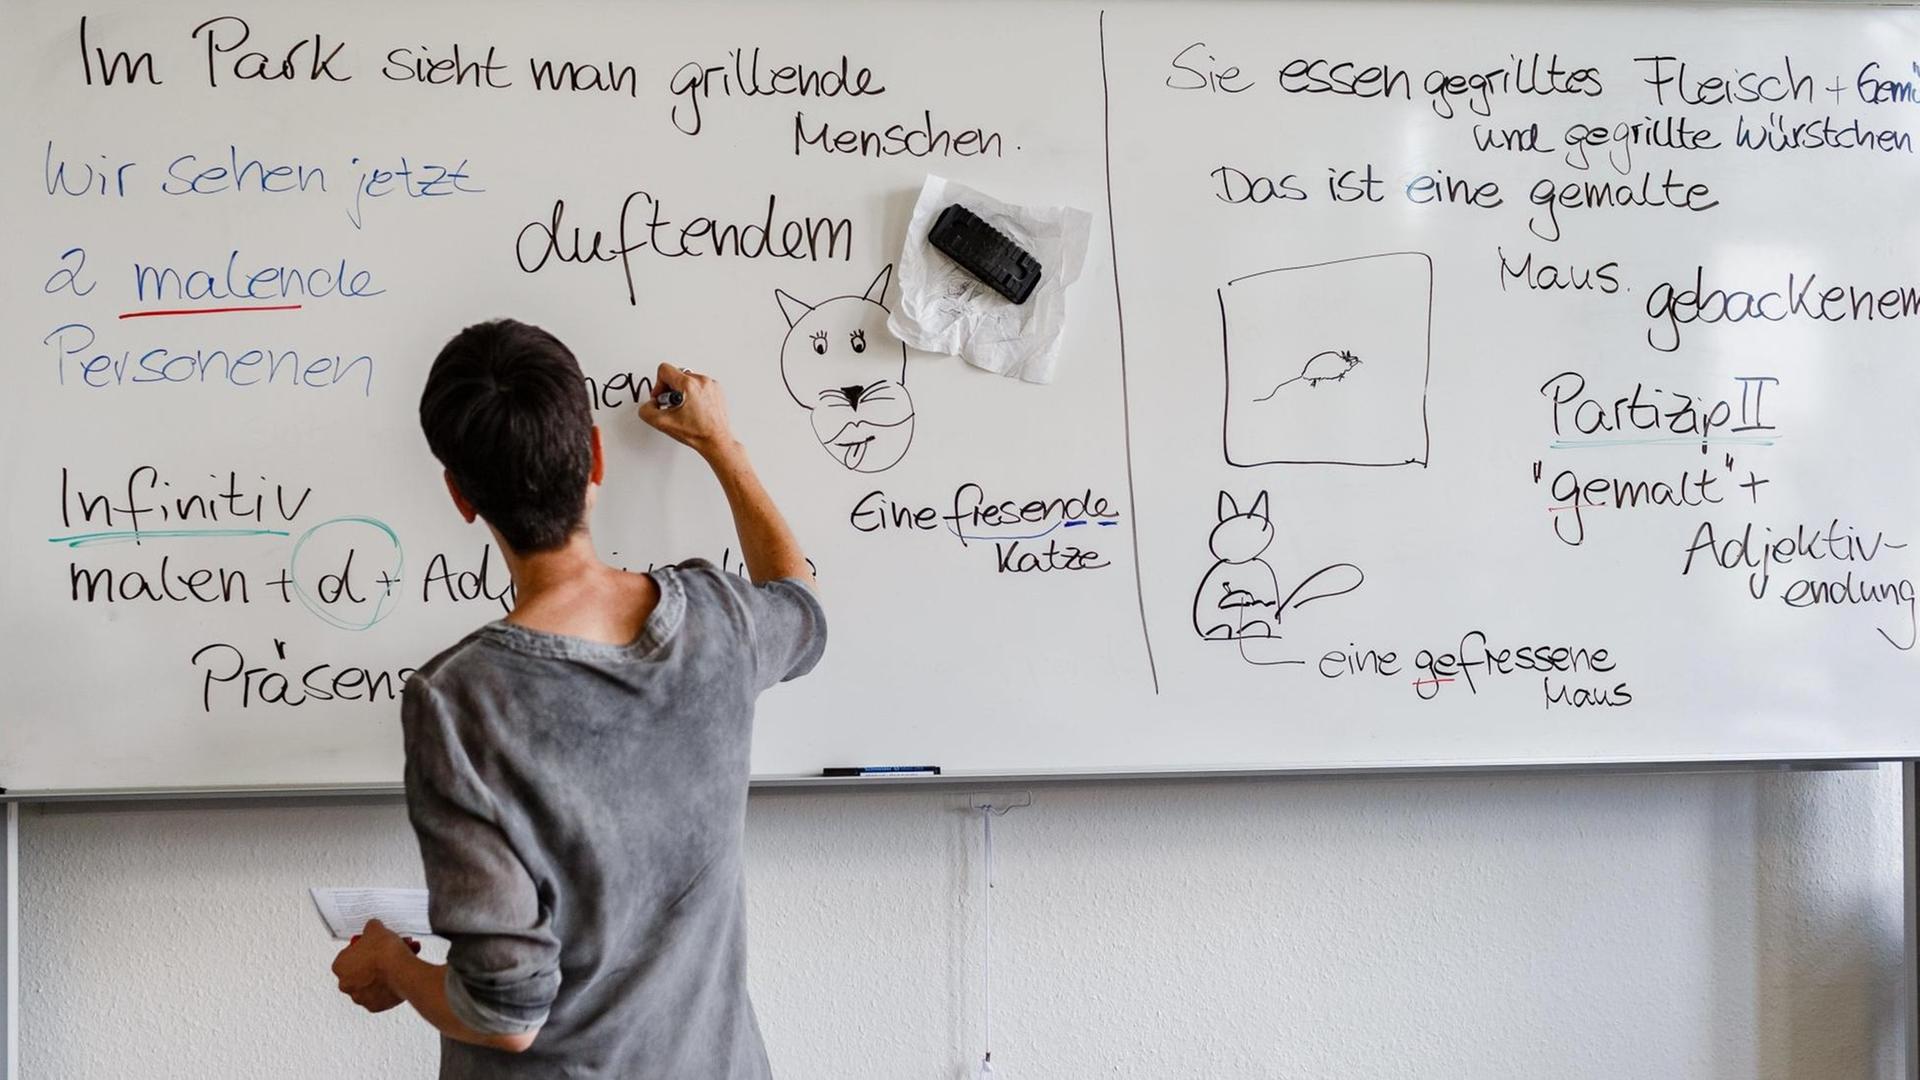 02.07.2018, Hamburg: Eine Lehrerin schreibt in einem Deutschkurs für Ausländer an der Tafel.